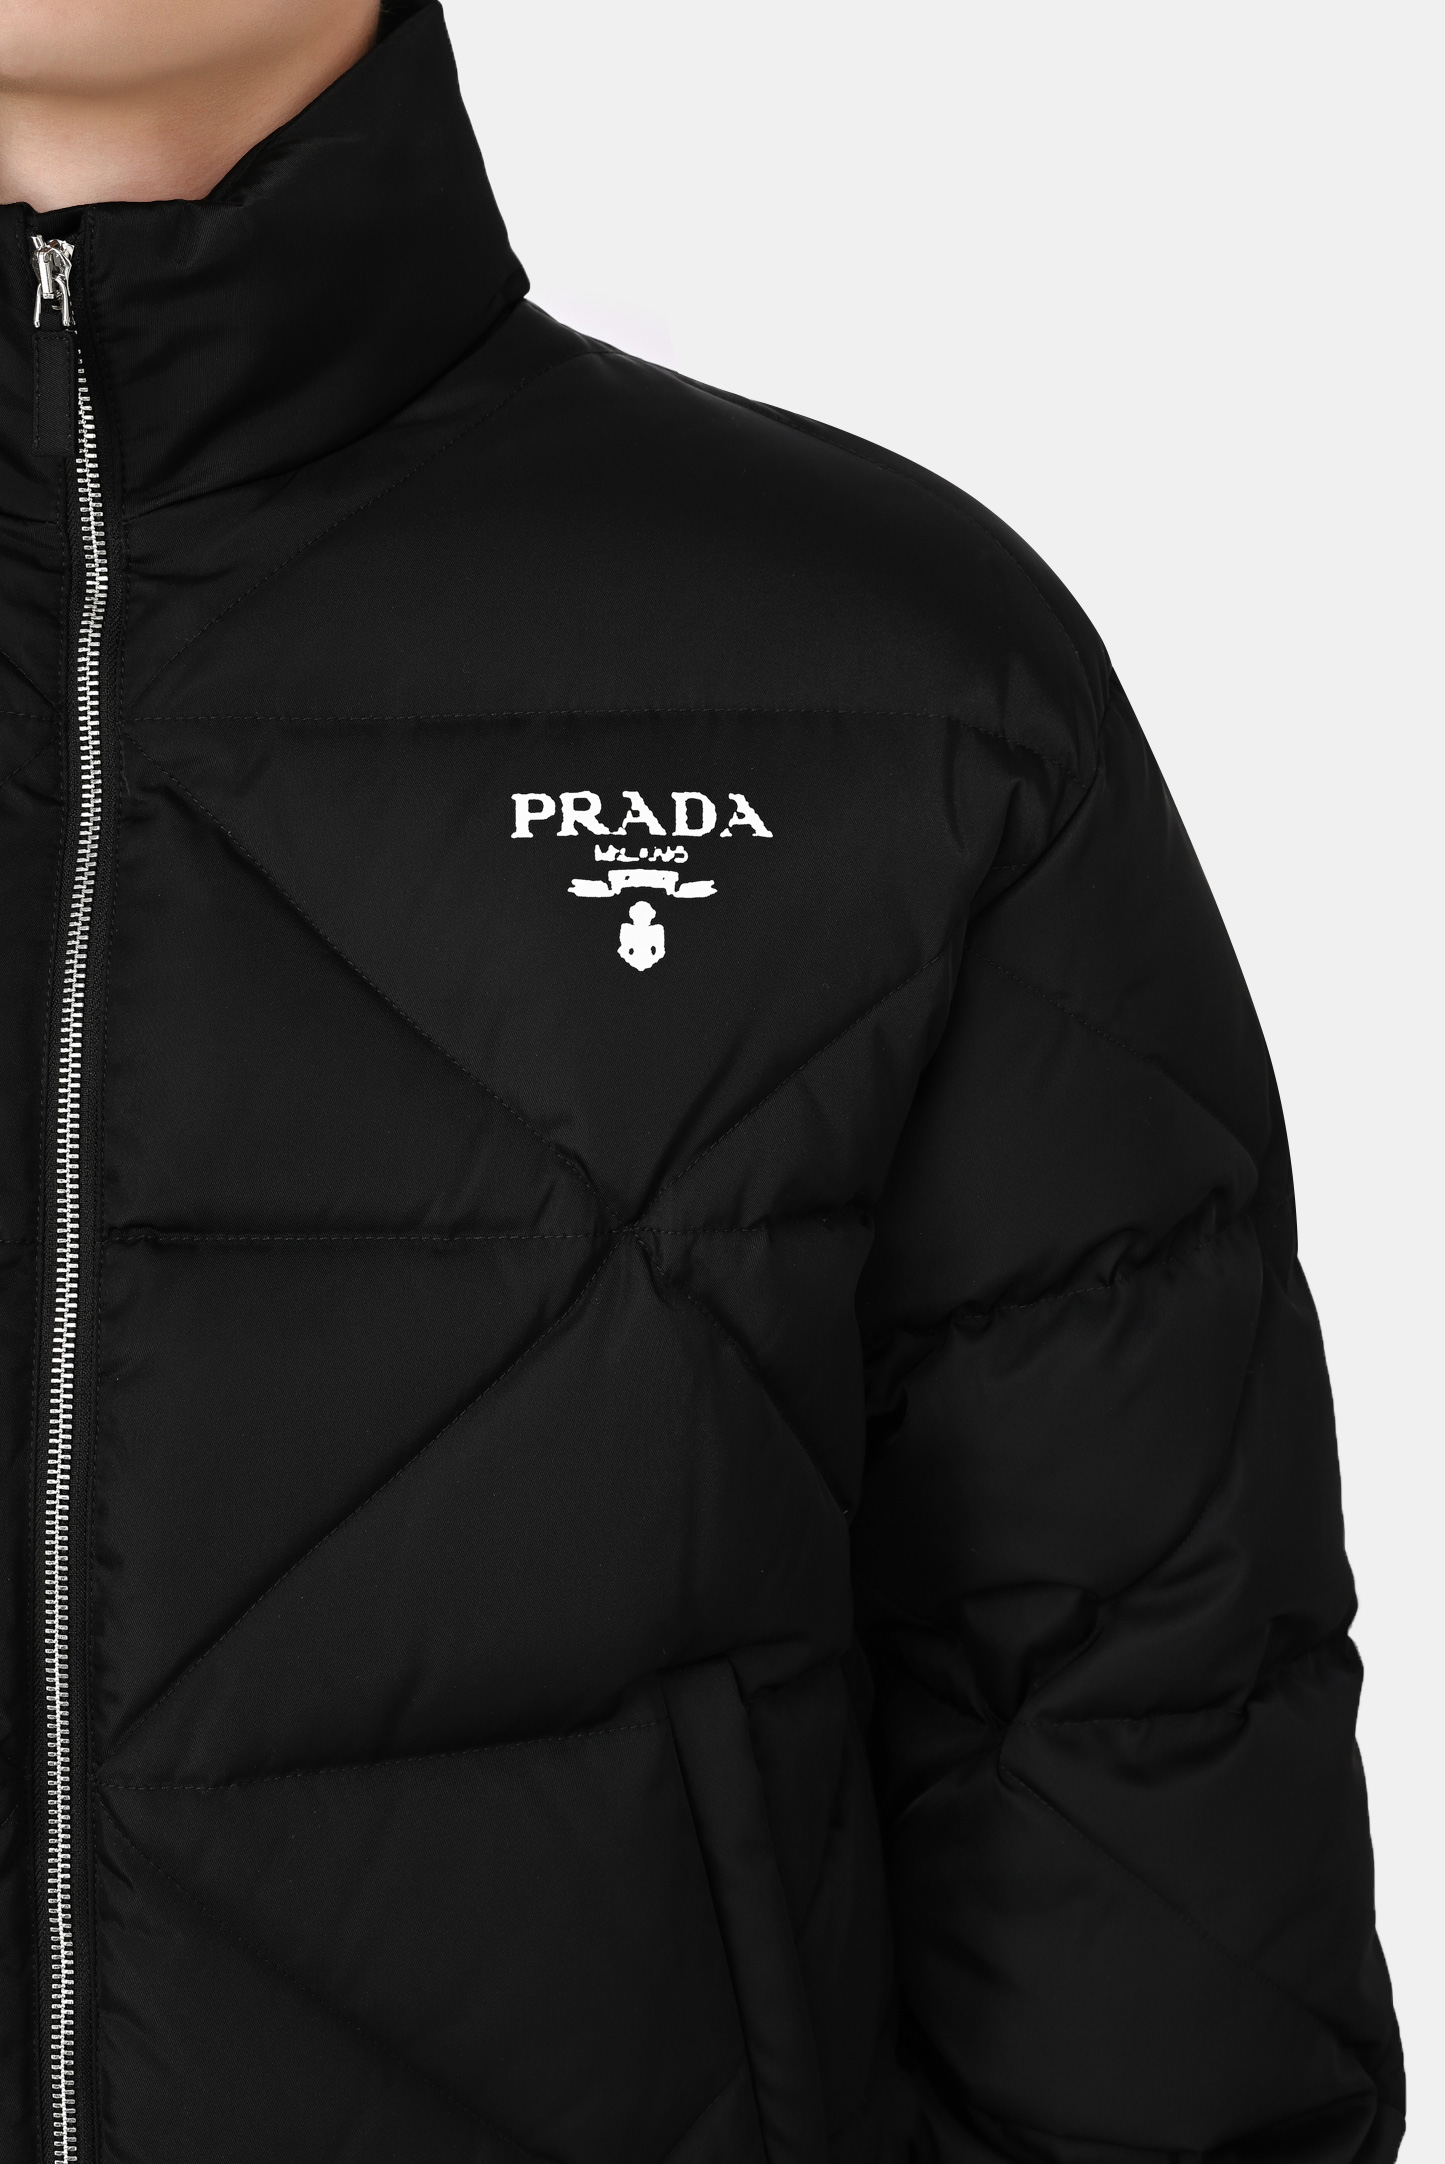 Куртка PRADA SGB803 S 202, цвет: Черный, Мужской